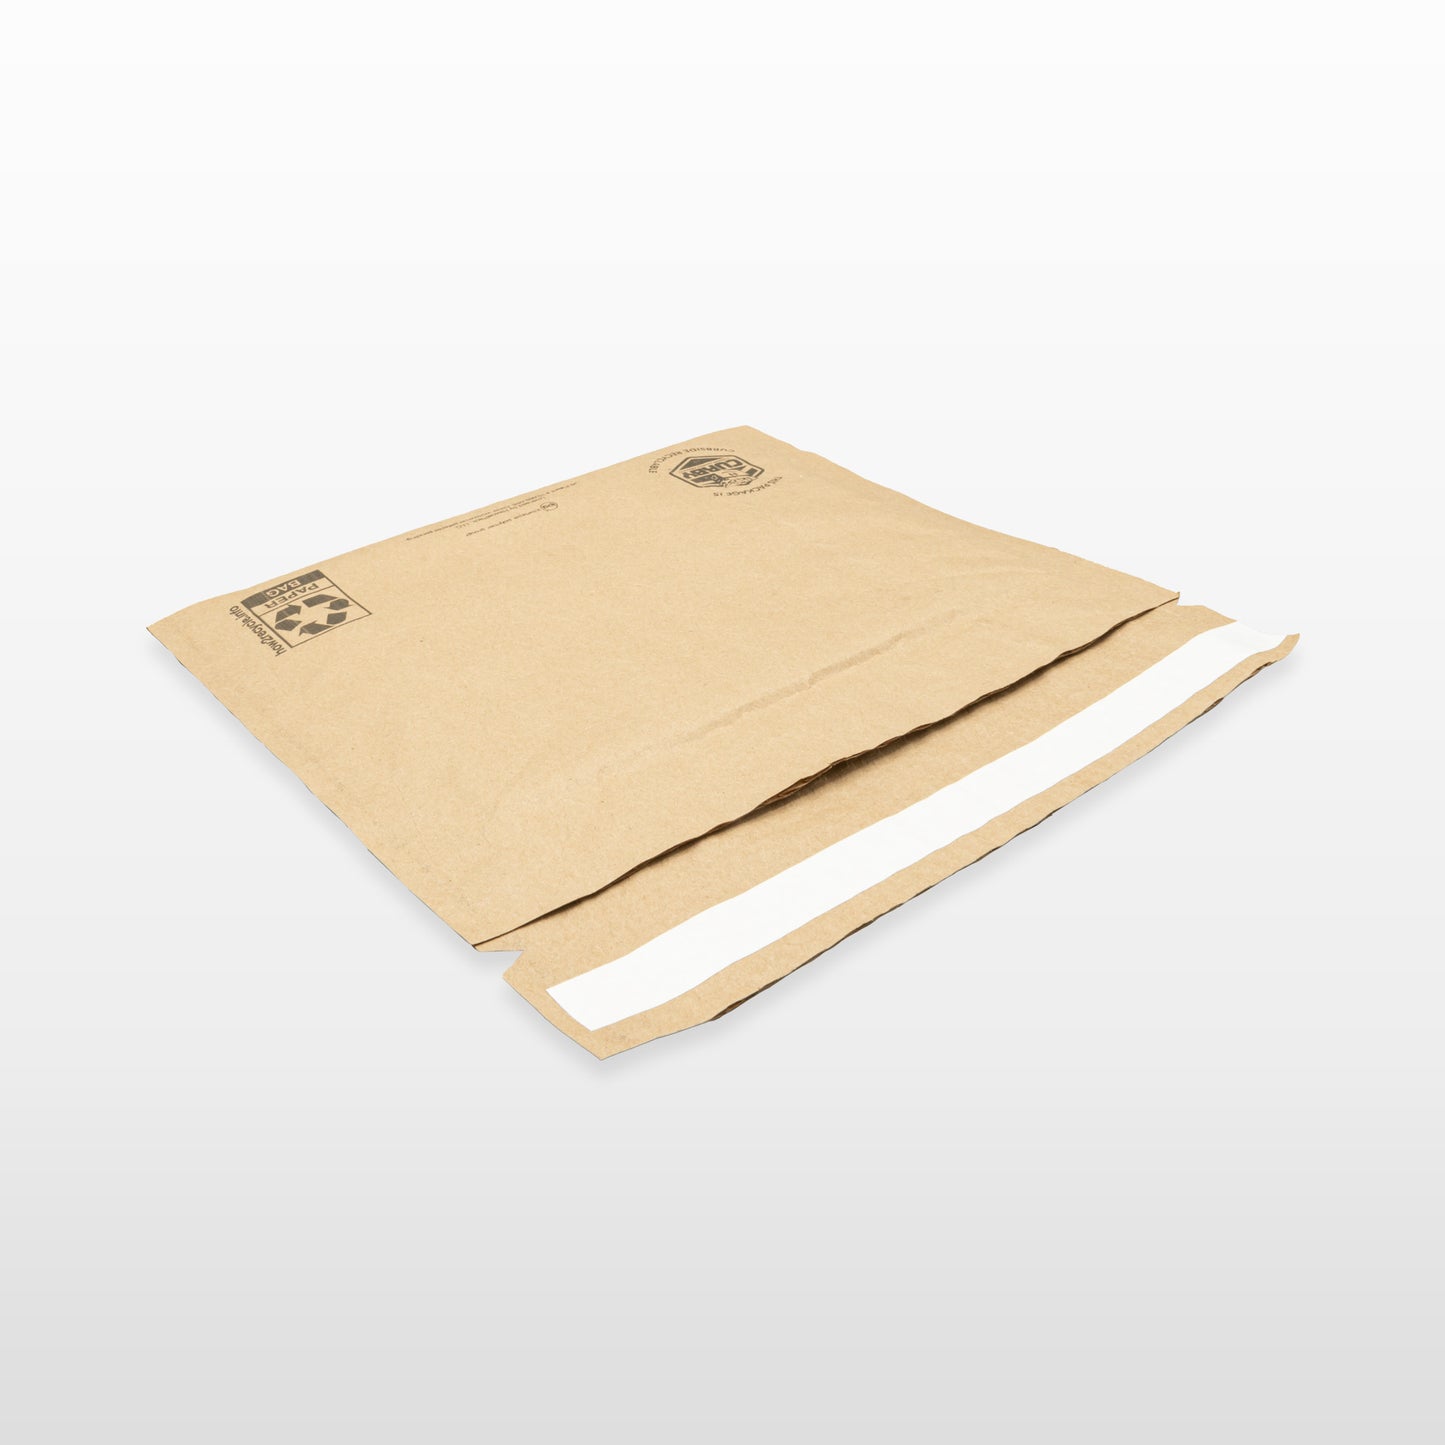 Sobres de panal para envíos tamaño carta